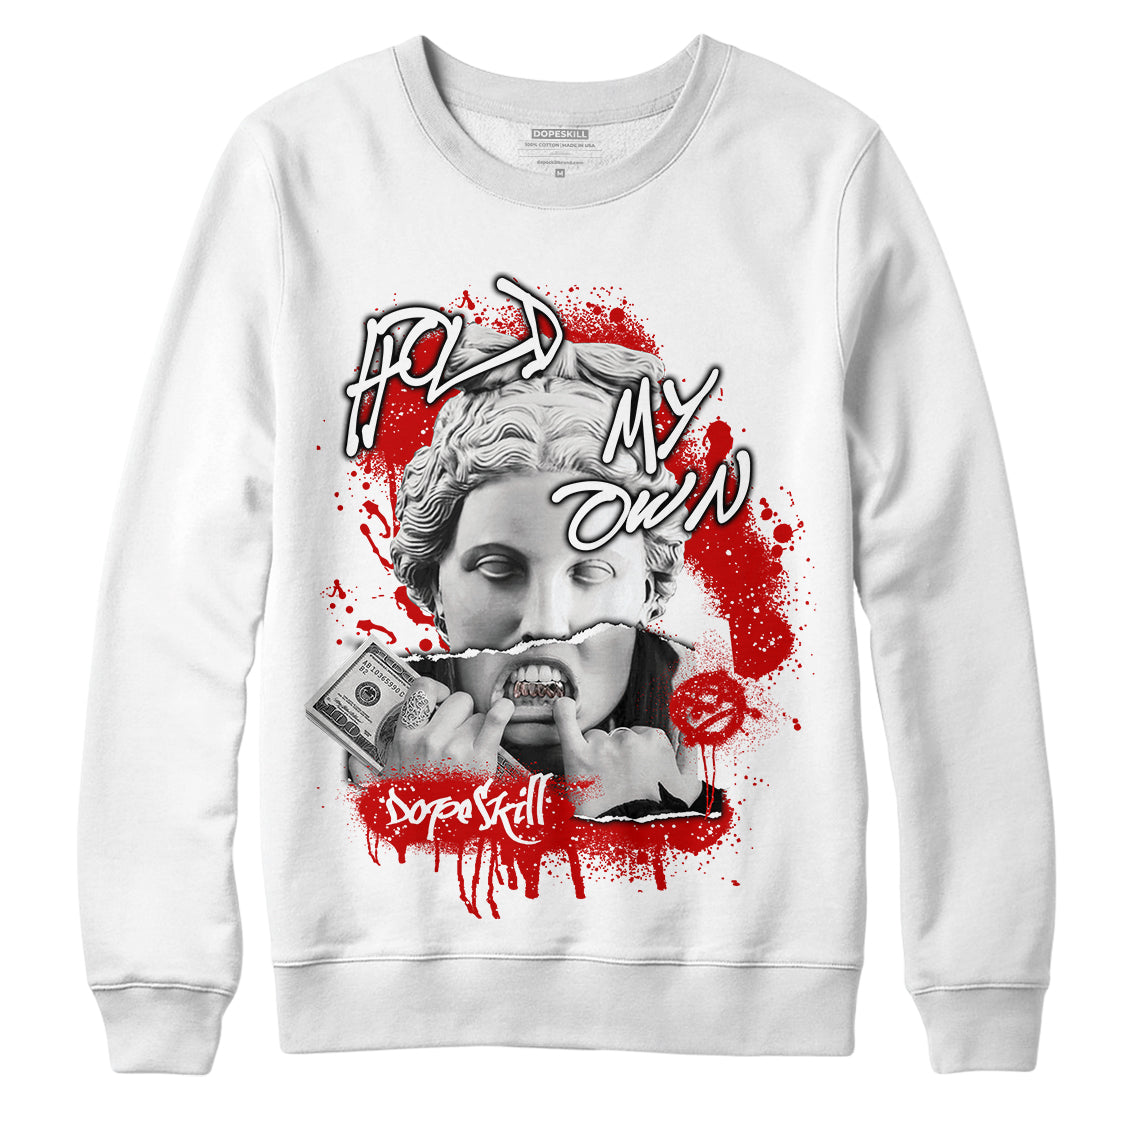 Jordan 6 “Red Oreo” DopeSkill Sweatshirt Hold My Own Graphic - White 